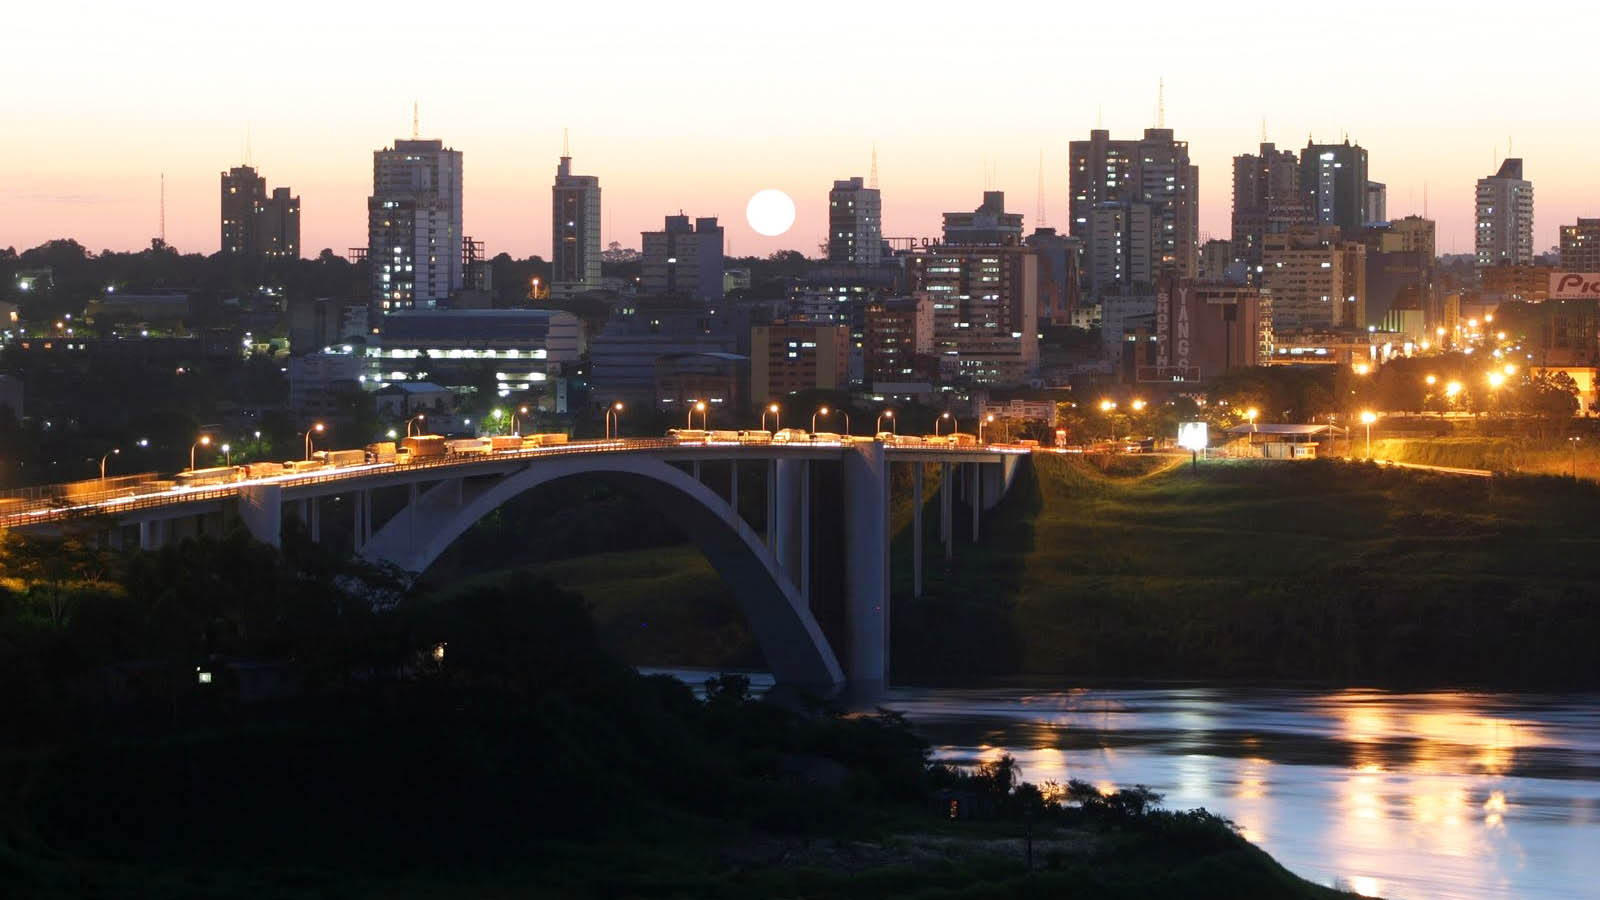 Ciudad del Este - Paraguay